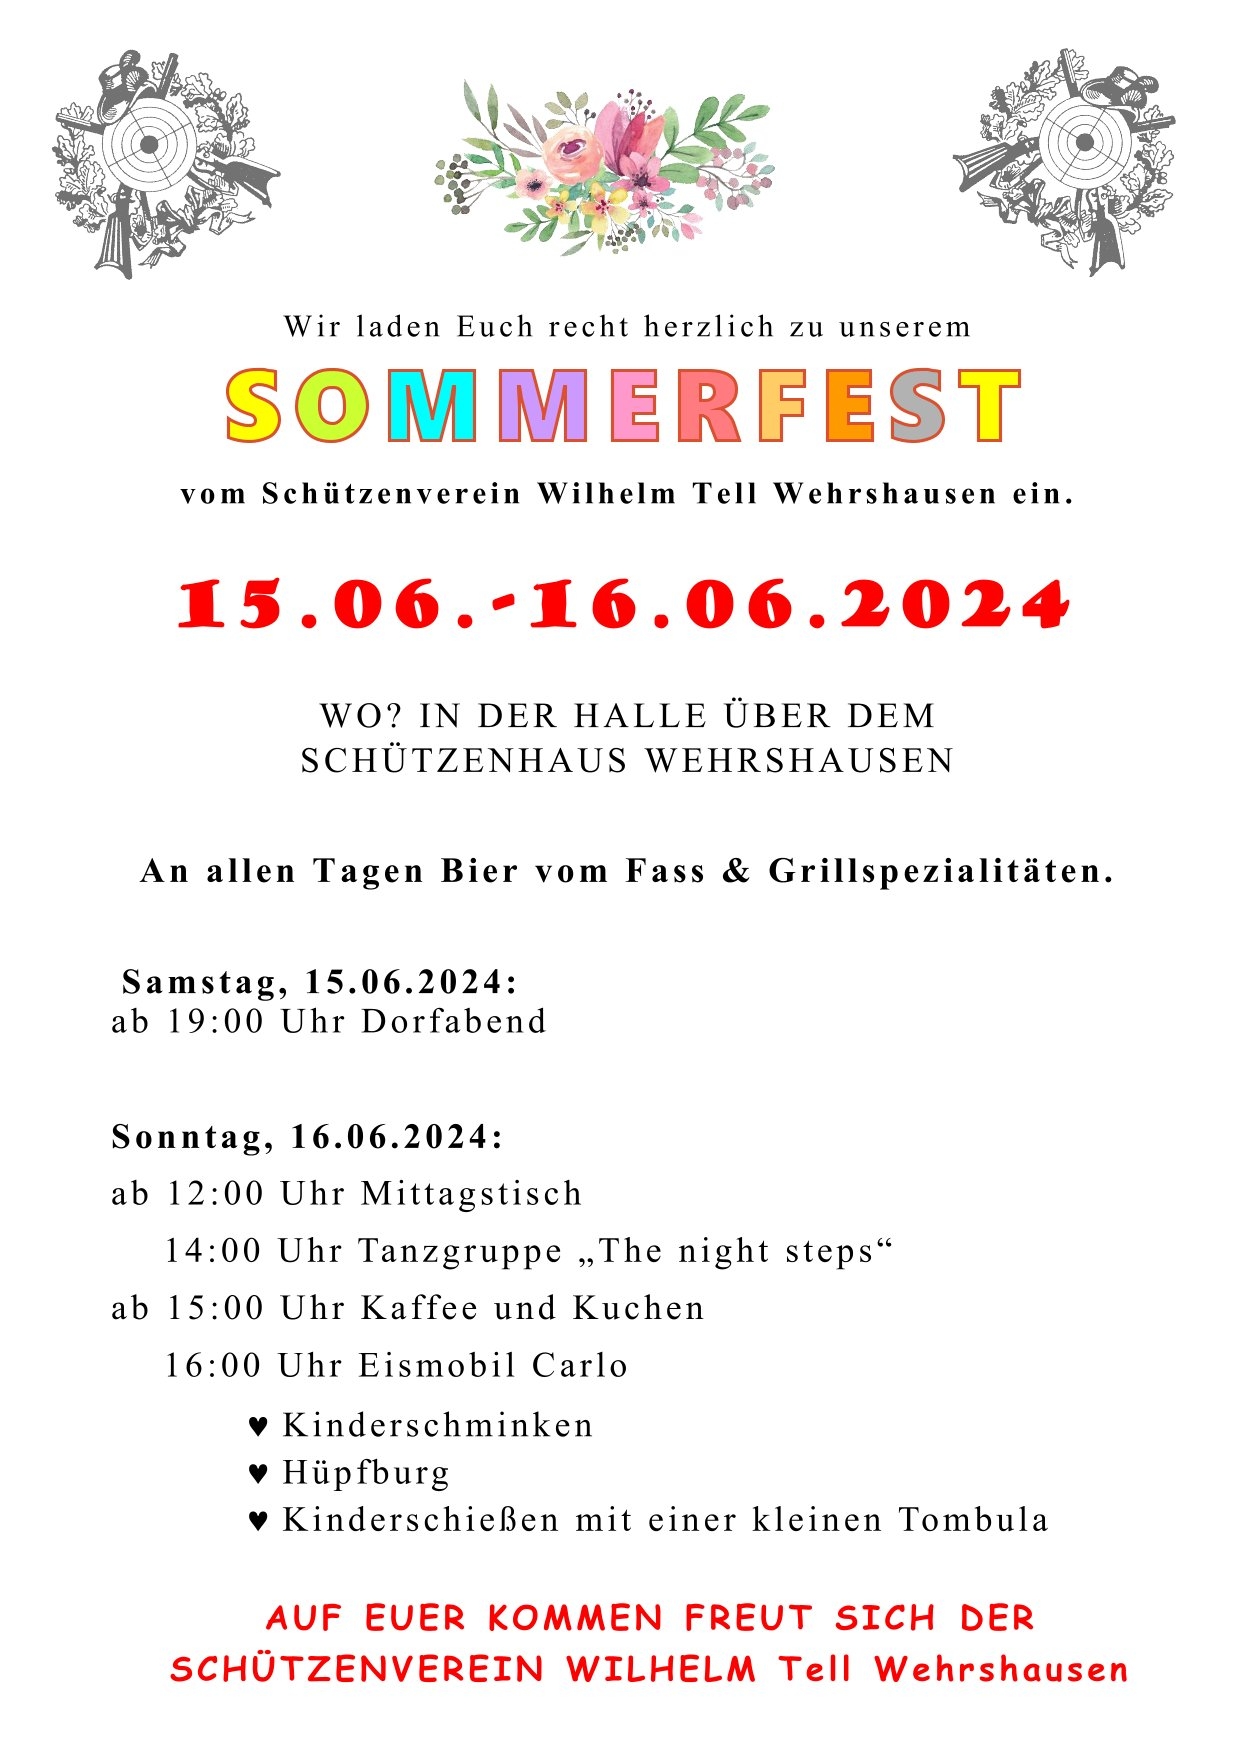 Sommerfest des Schützenvereins Wilhelm Tell Wehrshausen